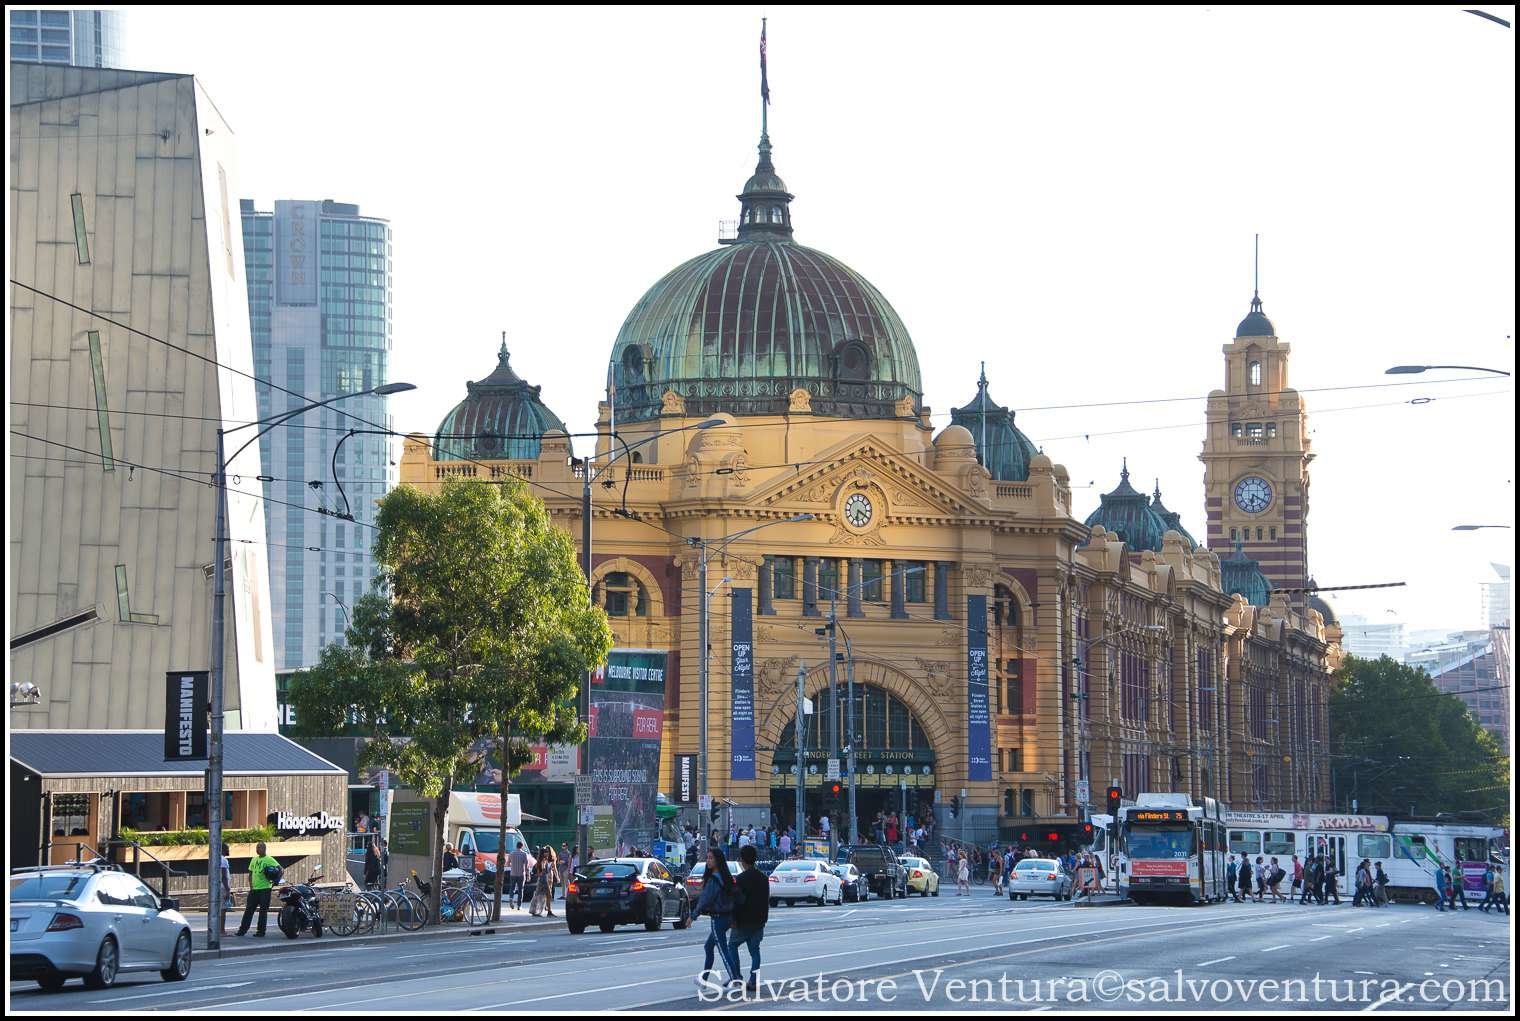 2016 March - Walking around Melbourne, Victoria - Australia